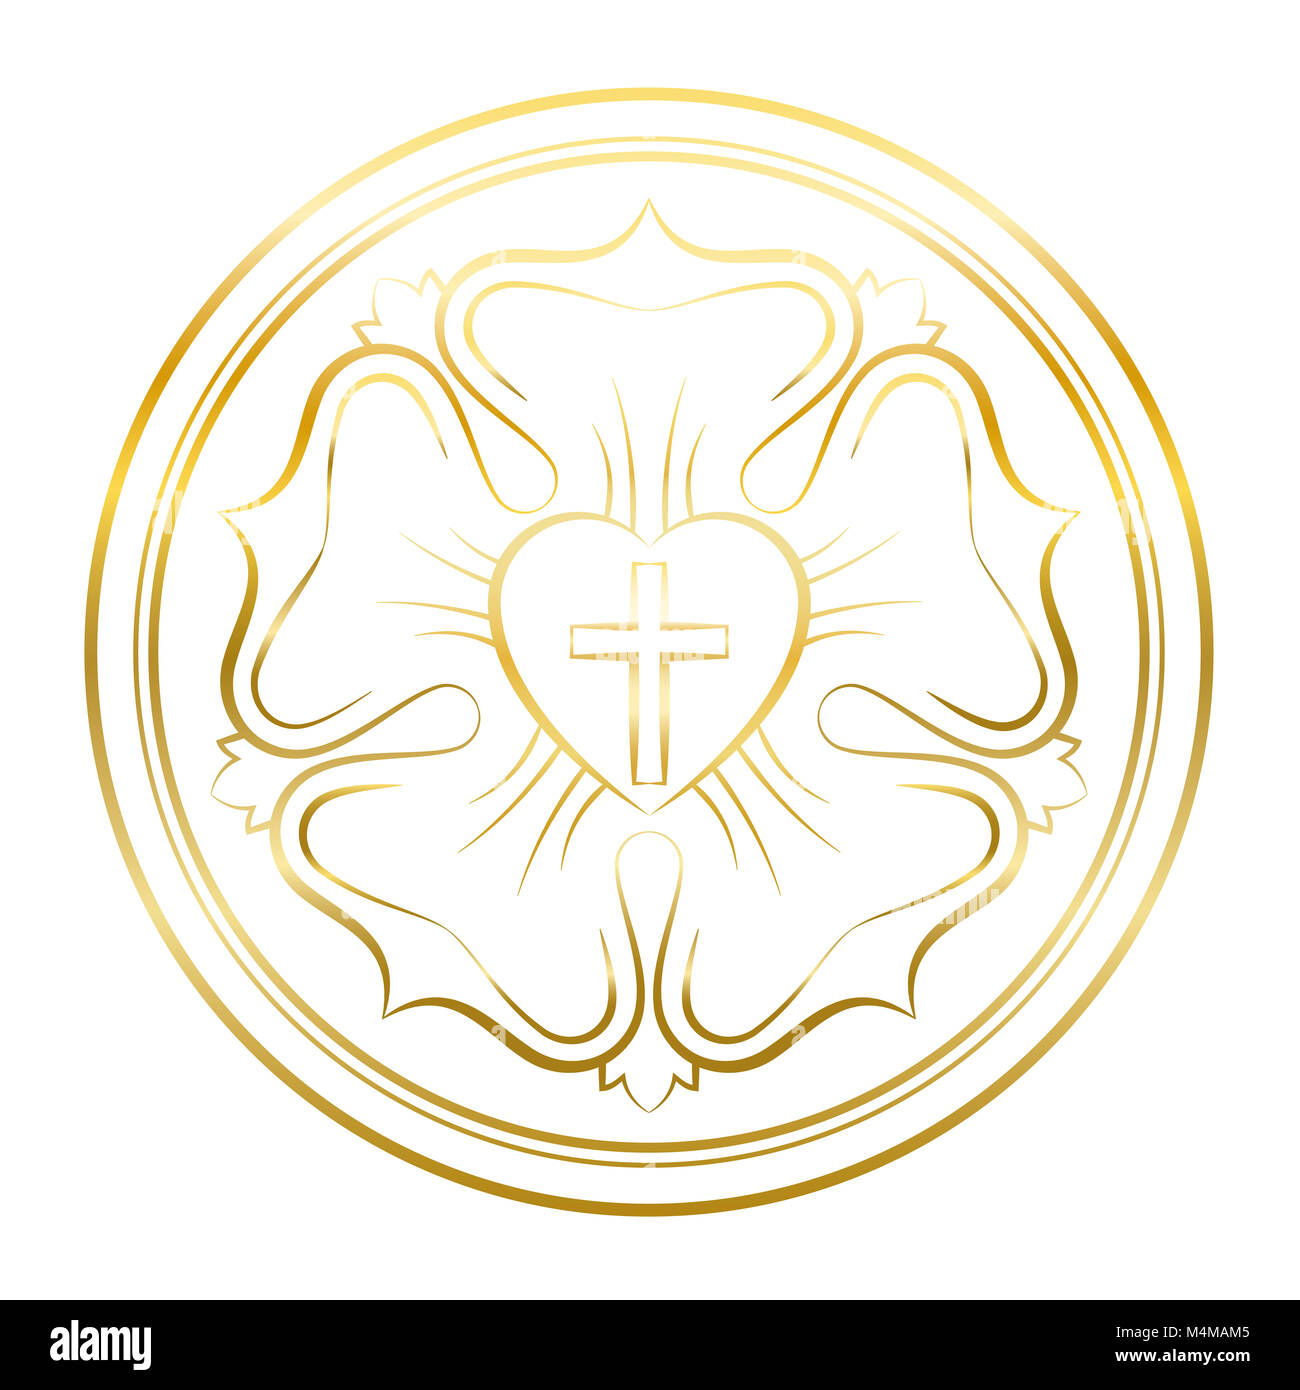 Luther rose Symbol. Golden Abbildung auf weißen Hintergrund. Martin Luther Dichtung, Symbol des Luthertums, bestehend aus einem Kreuz, Herz, Rose, Ring. Stockfoto